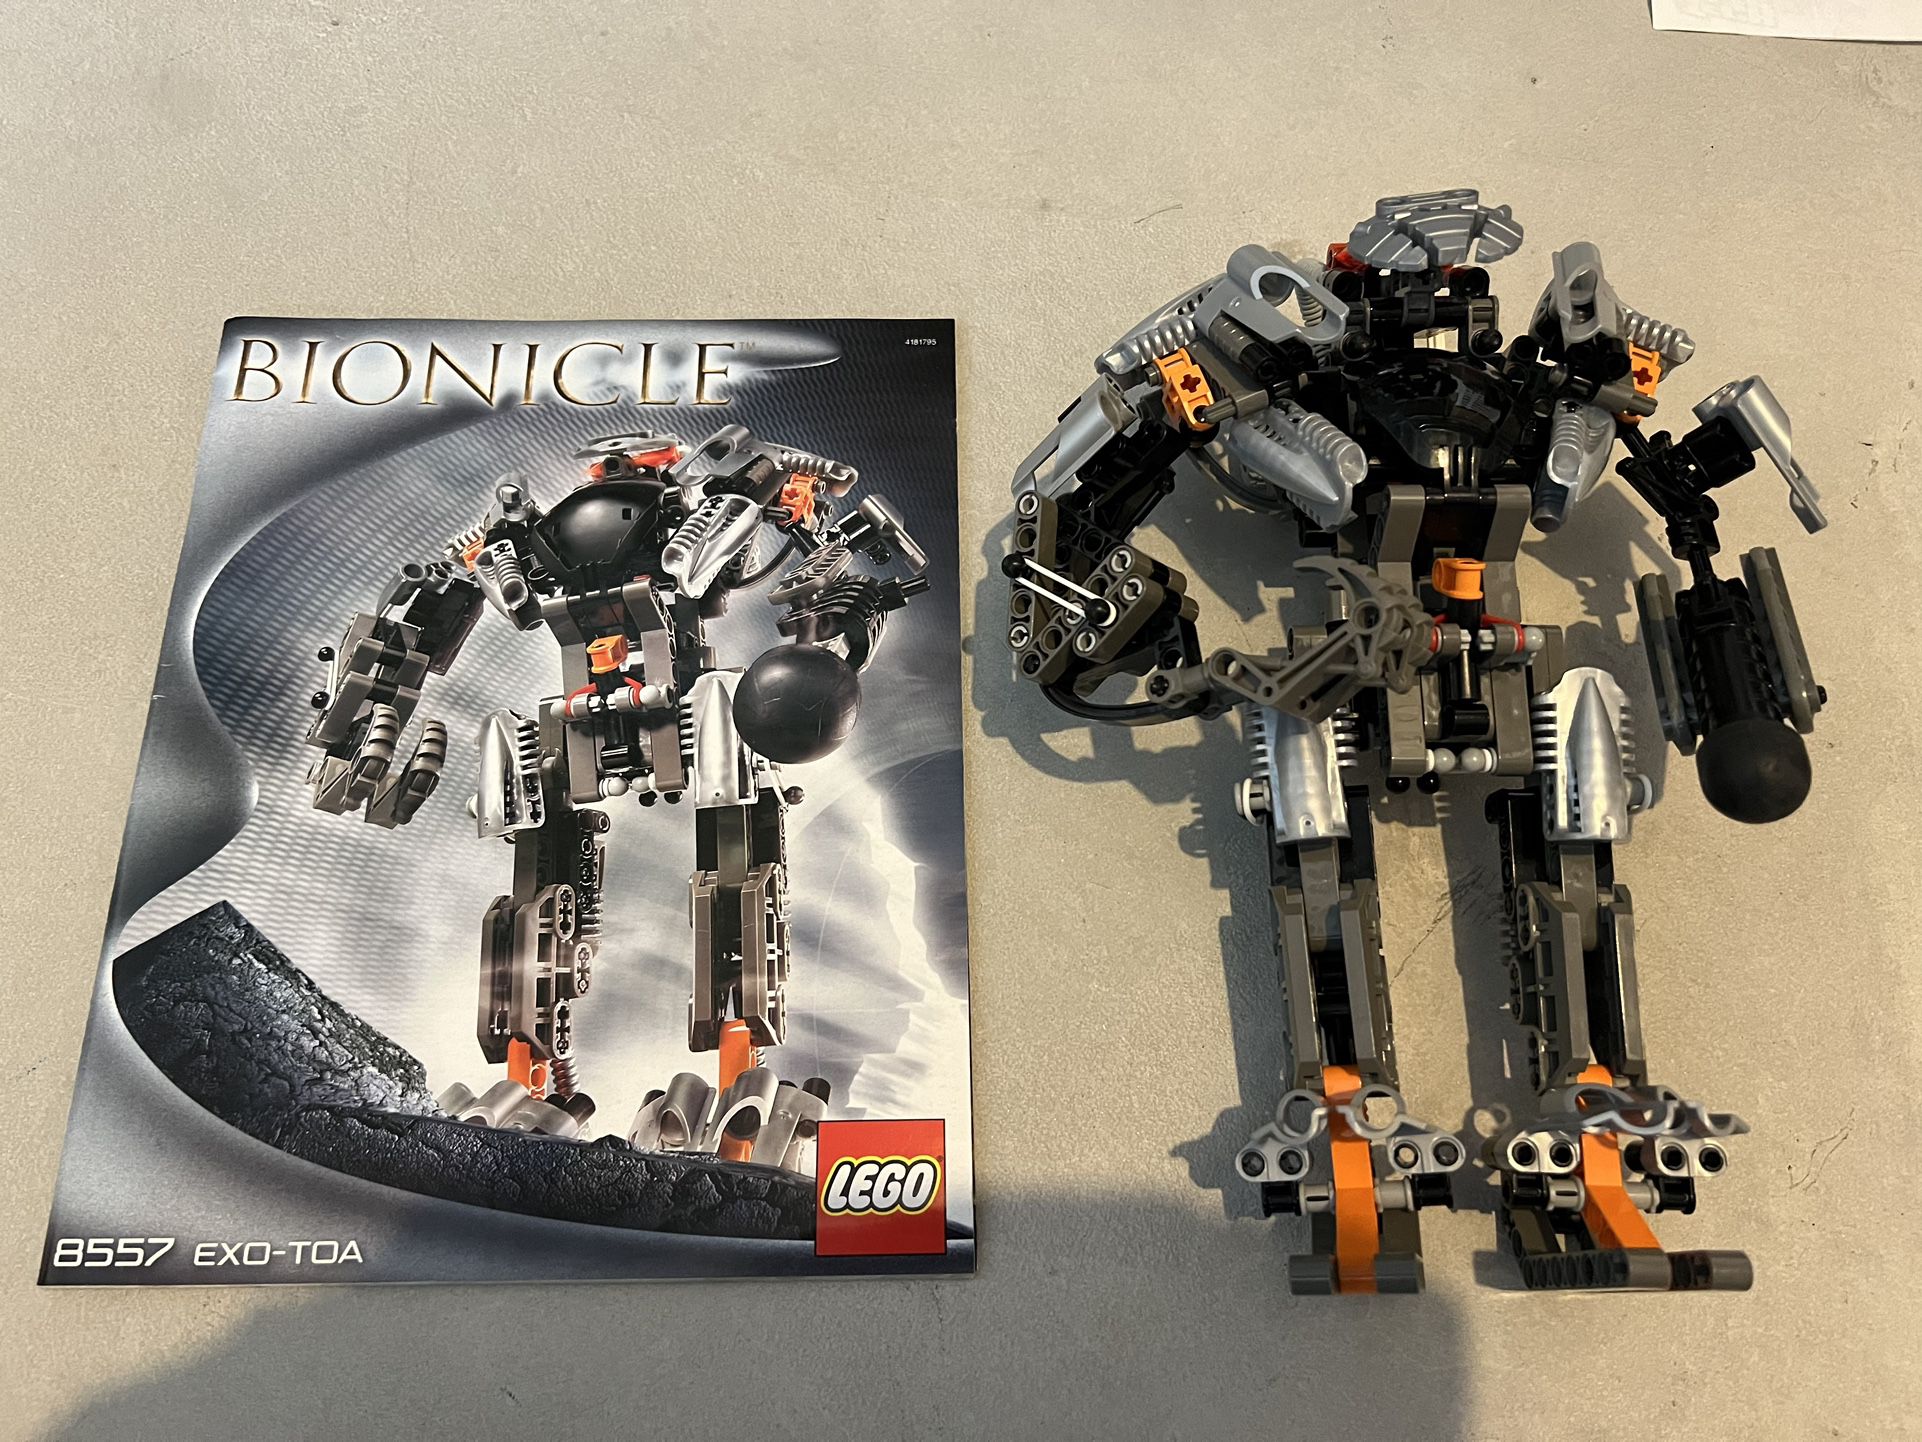 Lego Bionicle 8557 Exo-Toa